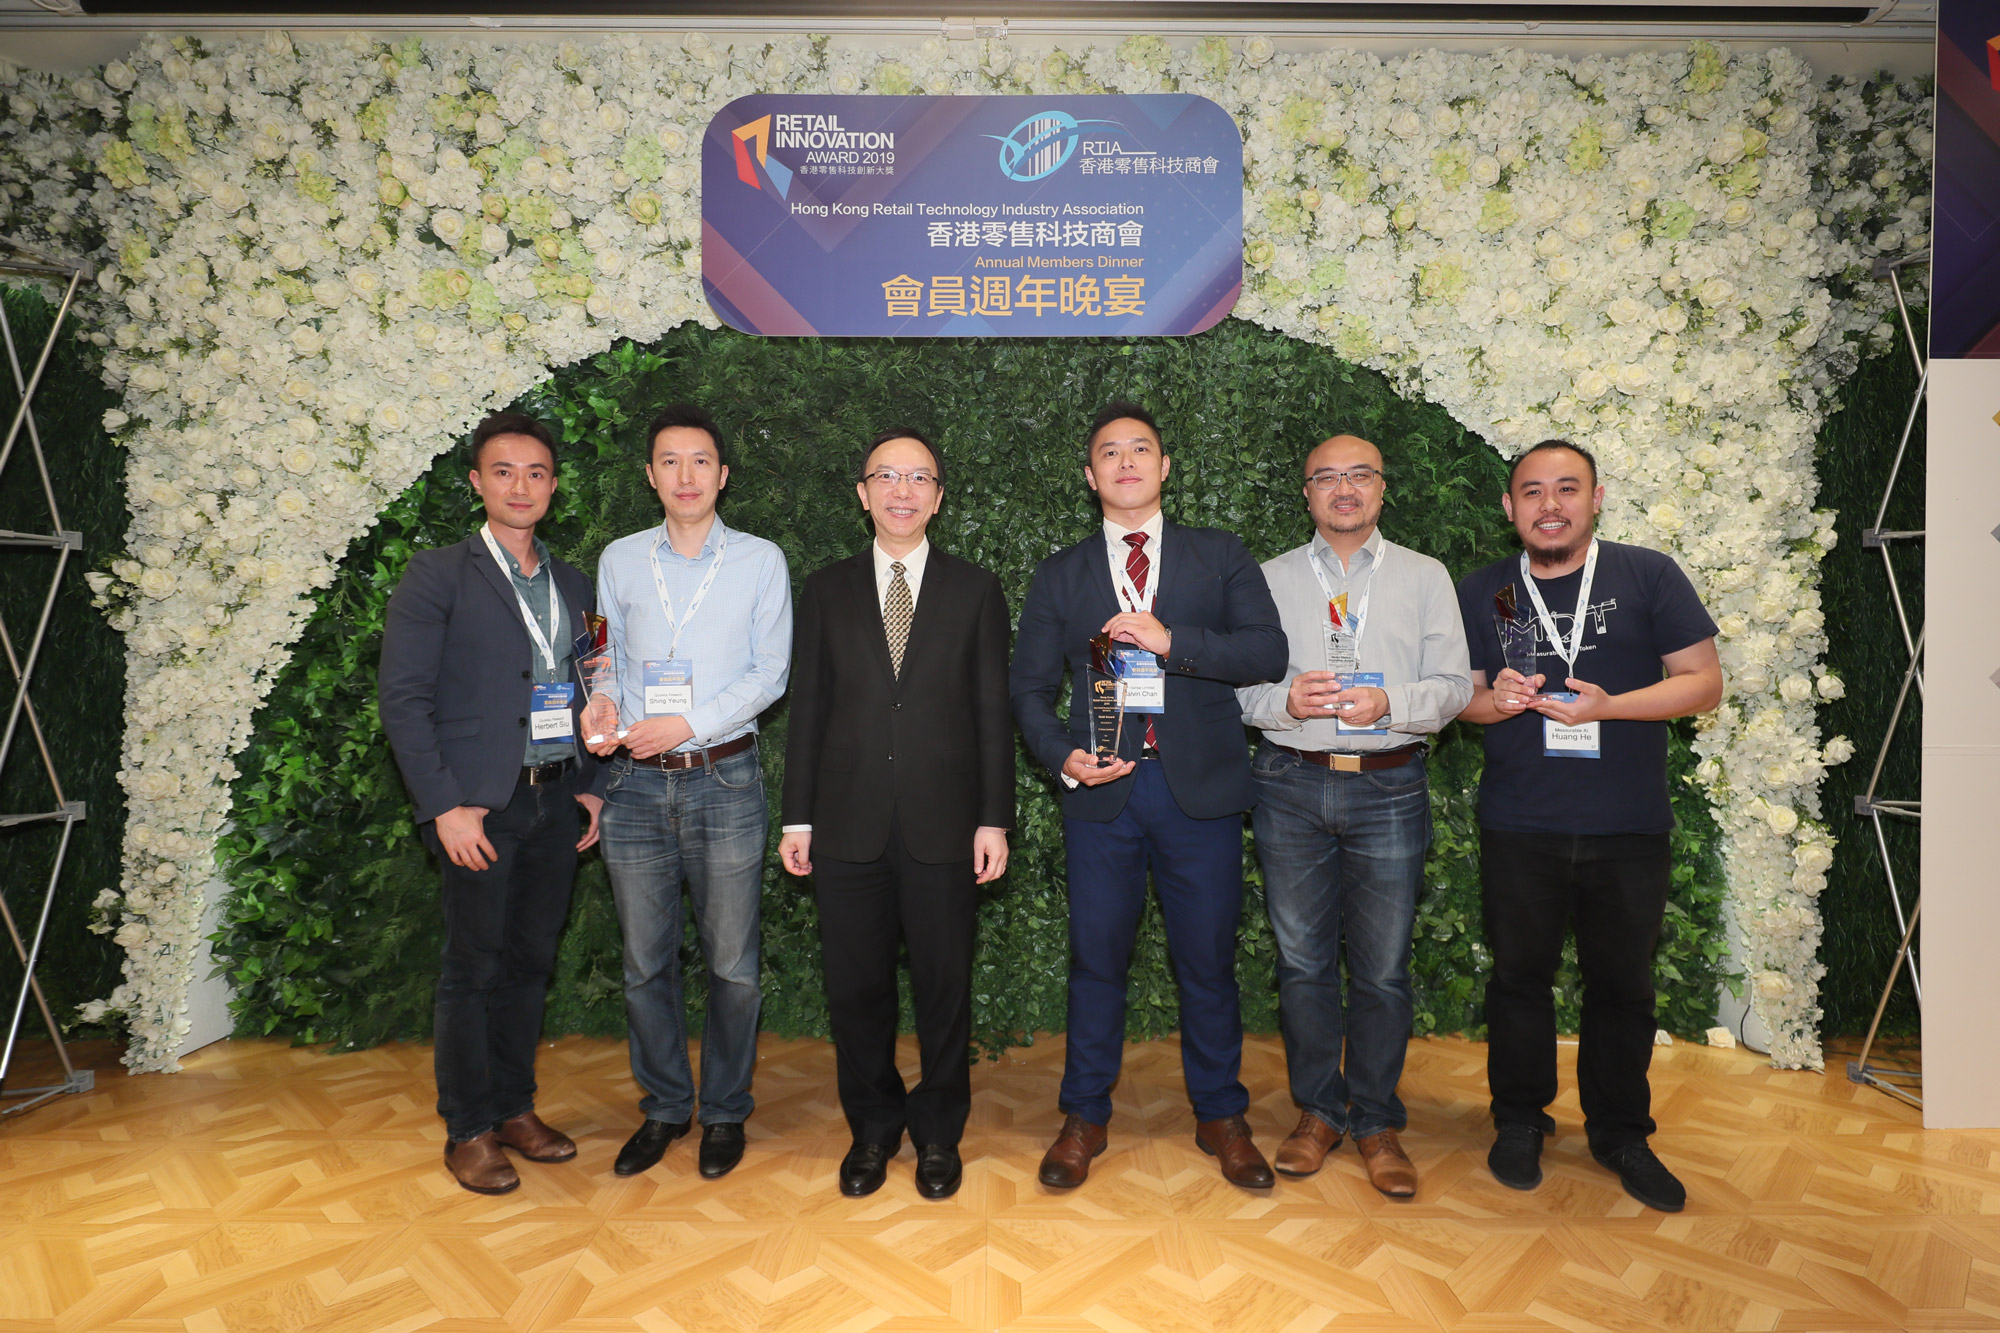 政府資訊科技總監林偉喬先生(左中)於「香港零售科技商會會員週年晚宴暨『2019香港零售科技創新大獎』頒獎典禮」與最佳零售創新產品(初創)大獎 - 初創科技公司組別得獎代表合照